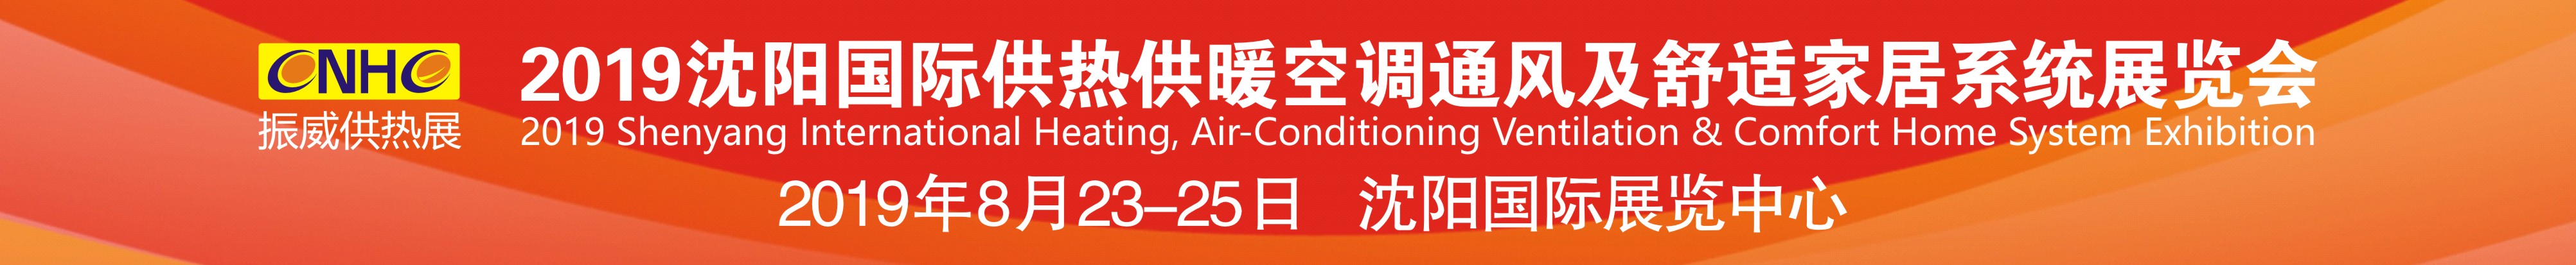 2019沈阳国际供热供暖空调通风及舒适家居系统展览会